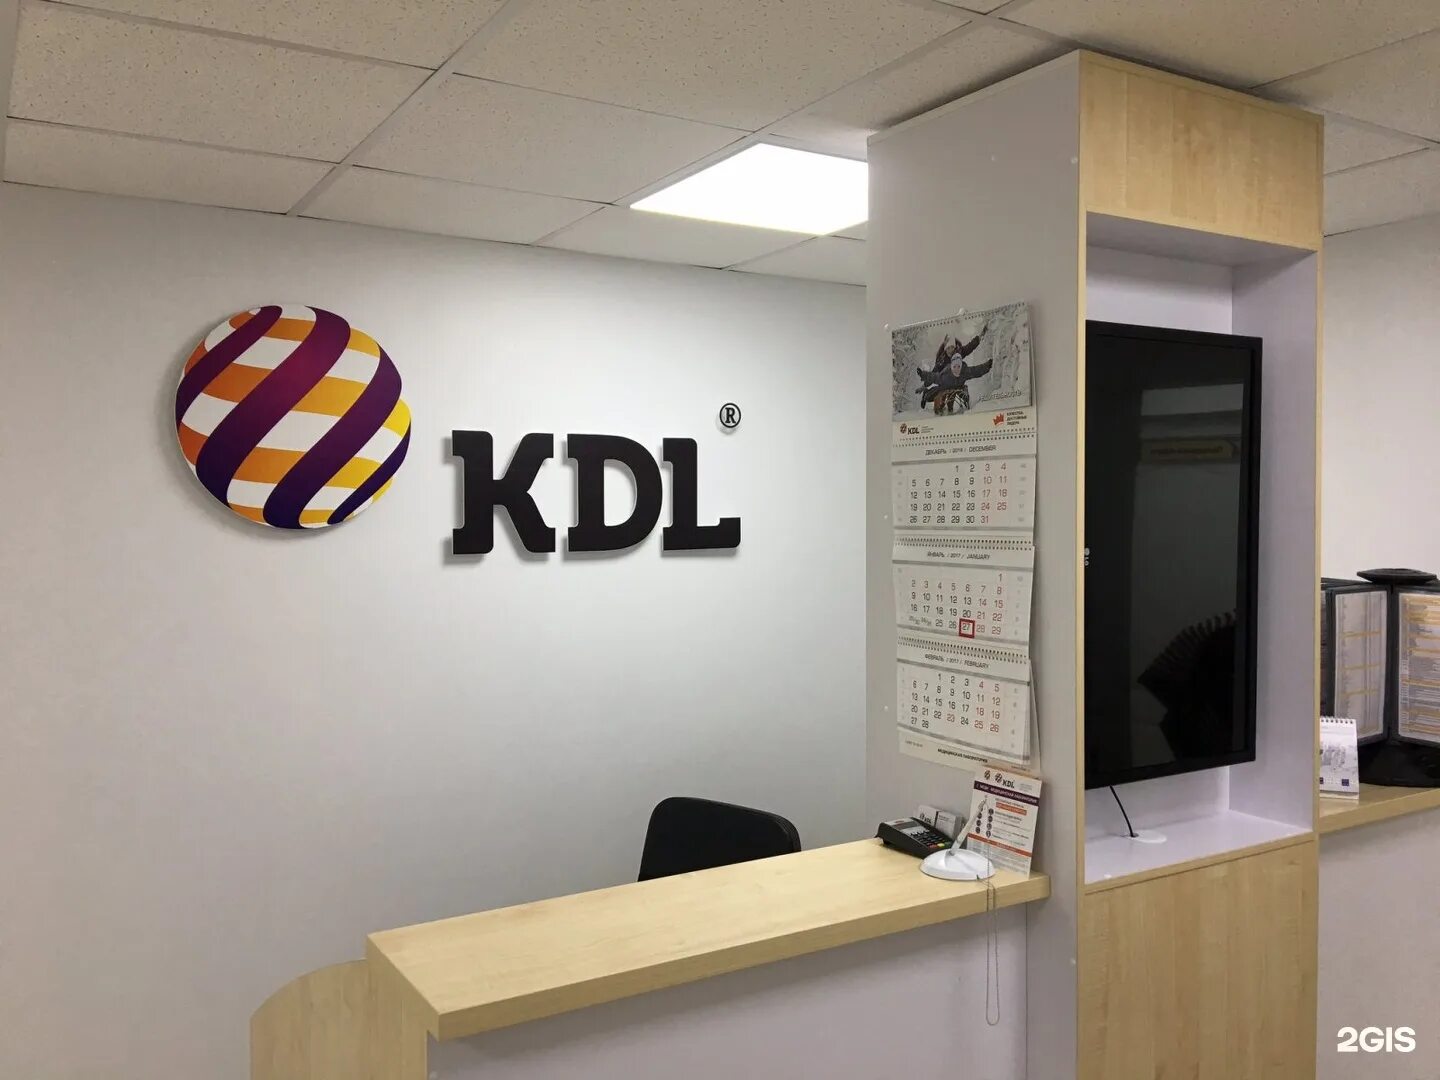 Вход в кабинет кдл. КДЛ лаборатория Омск. KDL логотип. Эмблема КДЛ лаборатории. KDL В Омске.